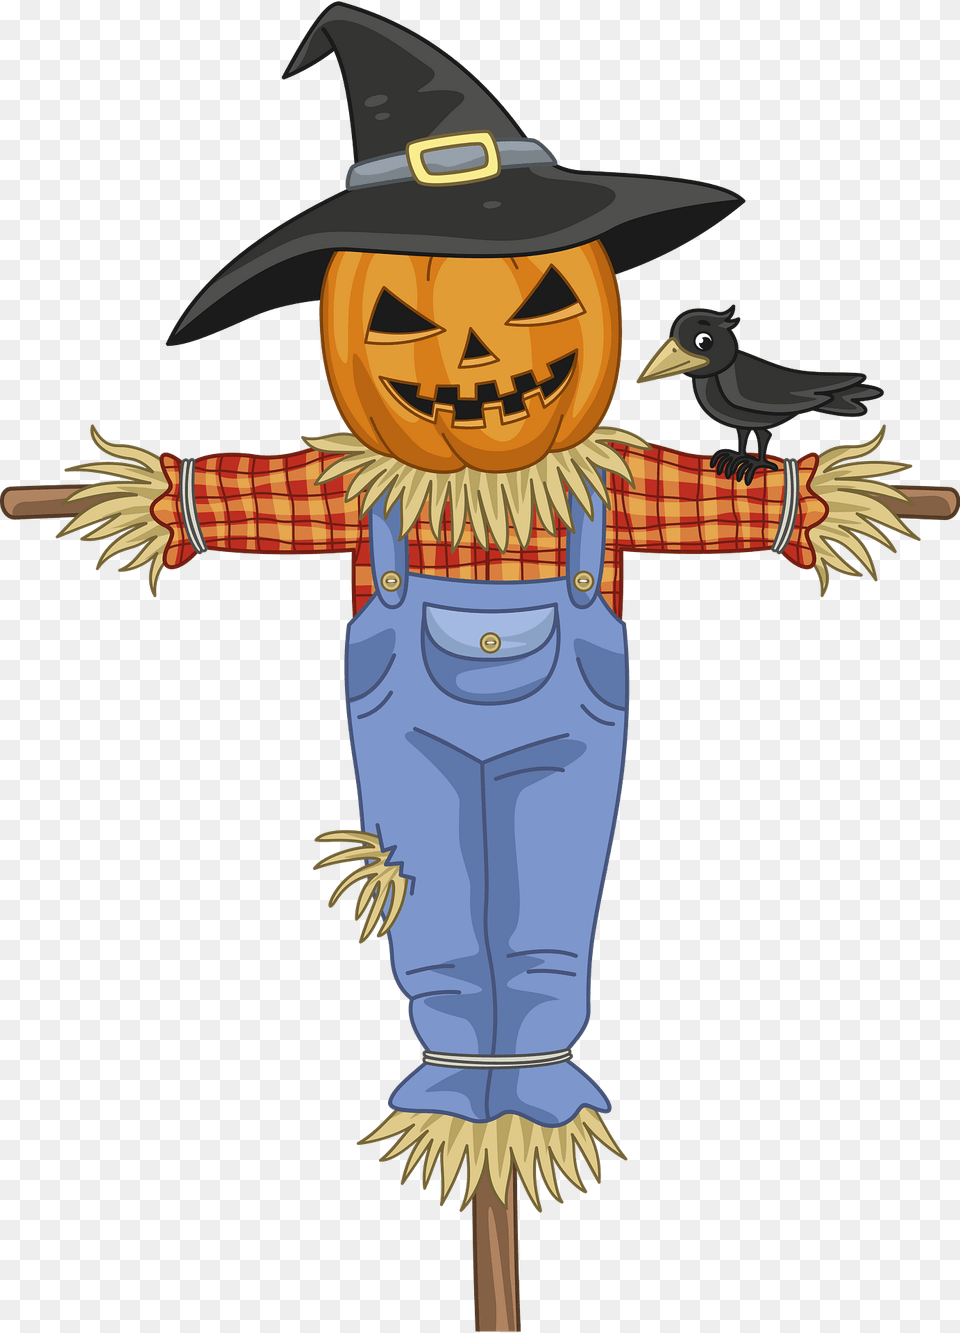 Scarecrow Clipart, Animal, Bird Free Transparent Png